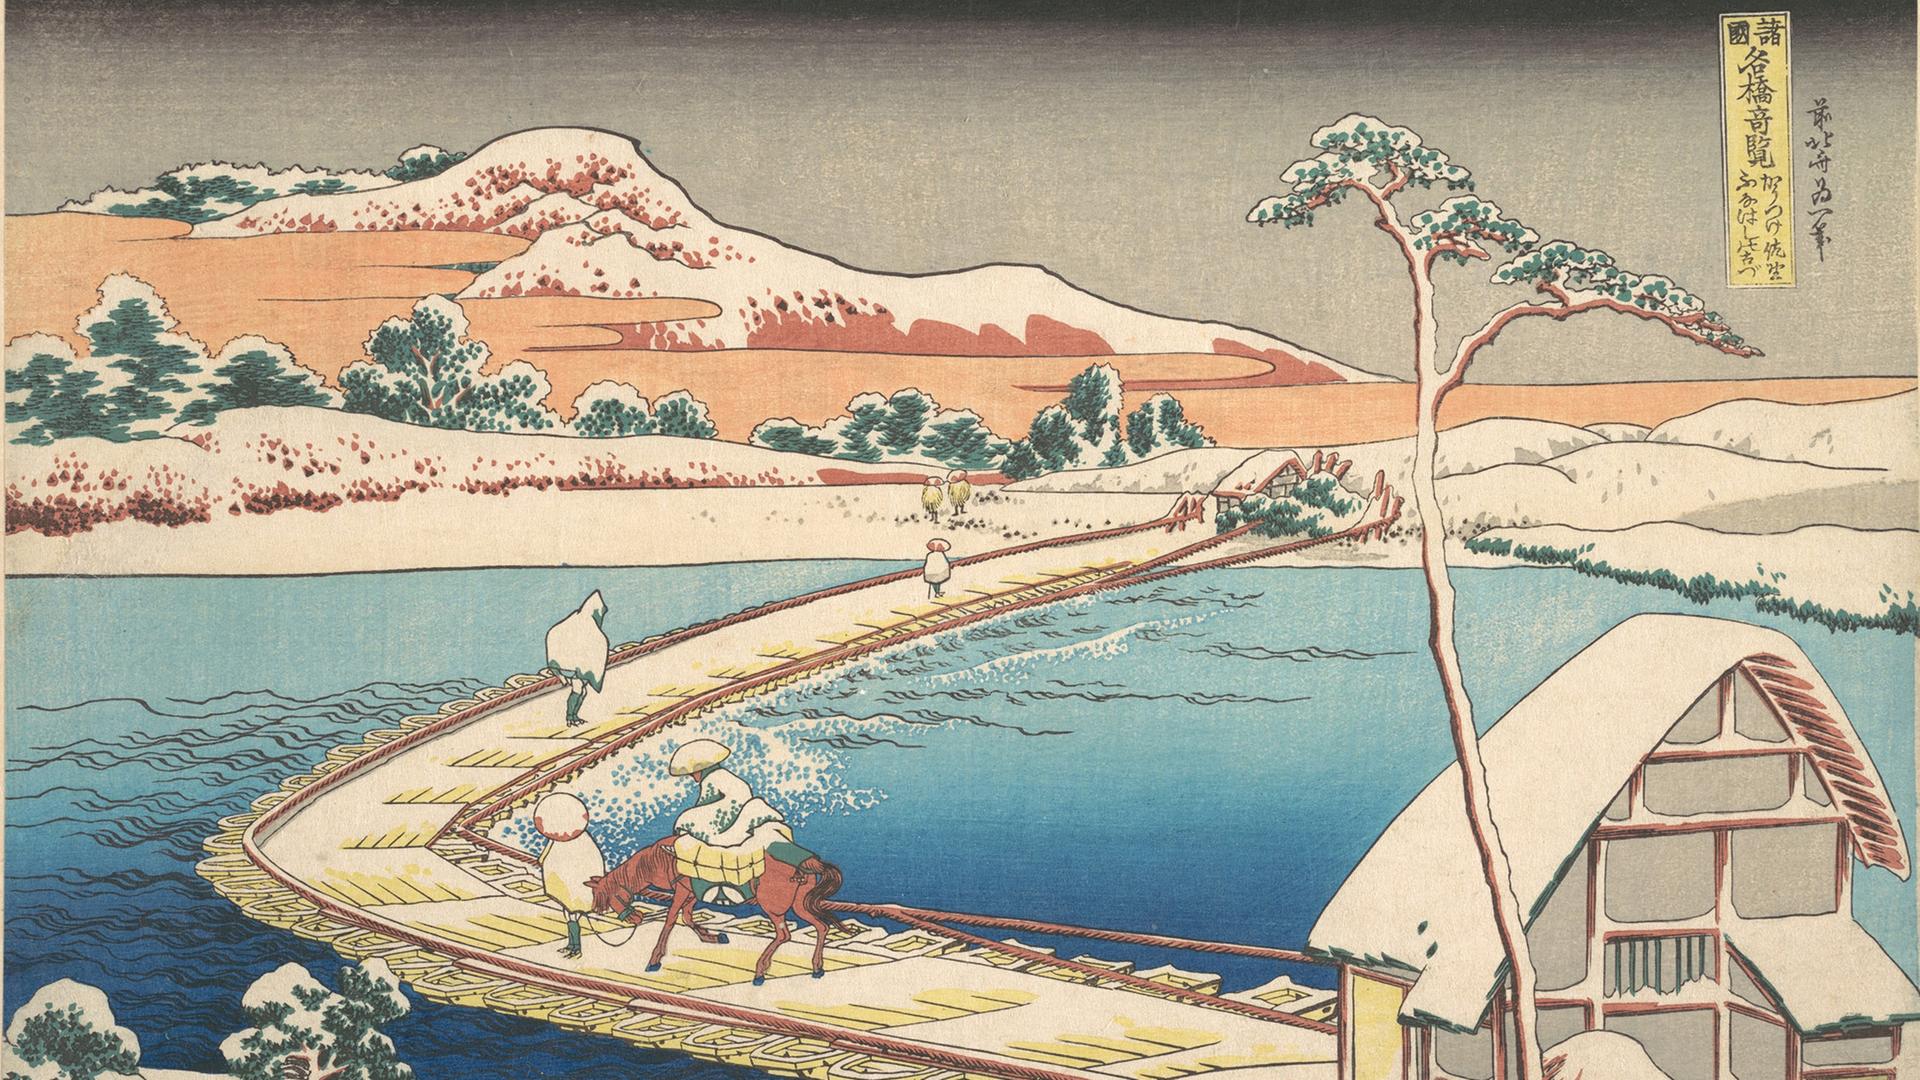 Zeichnung aus Japan um 1830, also aus den letzten Jahren der Edo-Zeit.